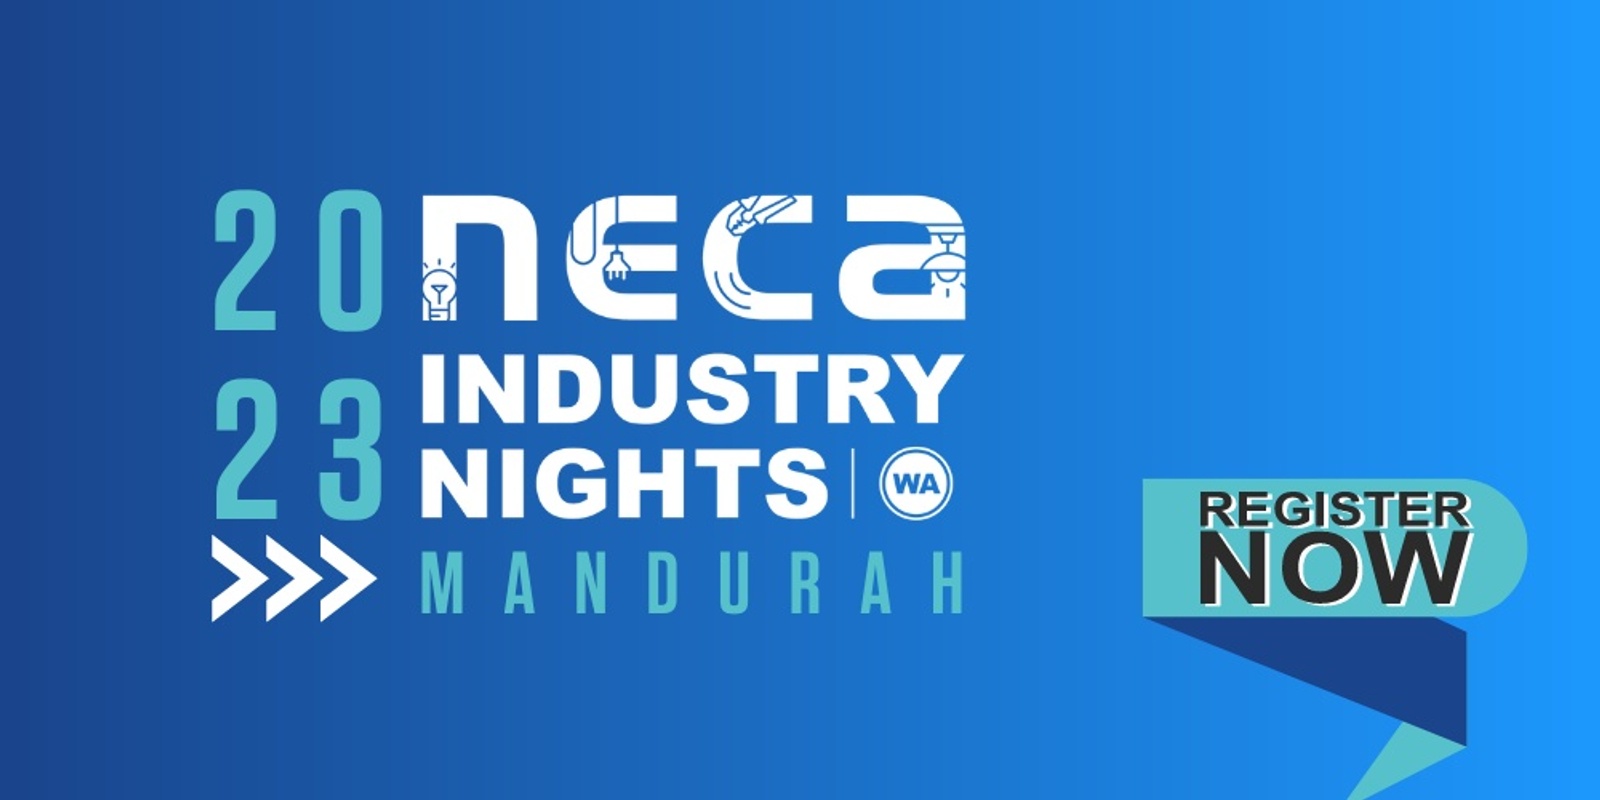 Banner image for 2023 NECA WA Industry Night - Mandurah